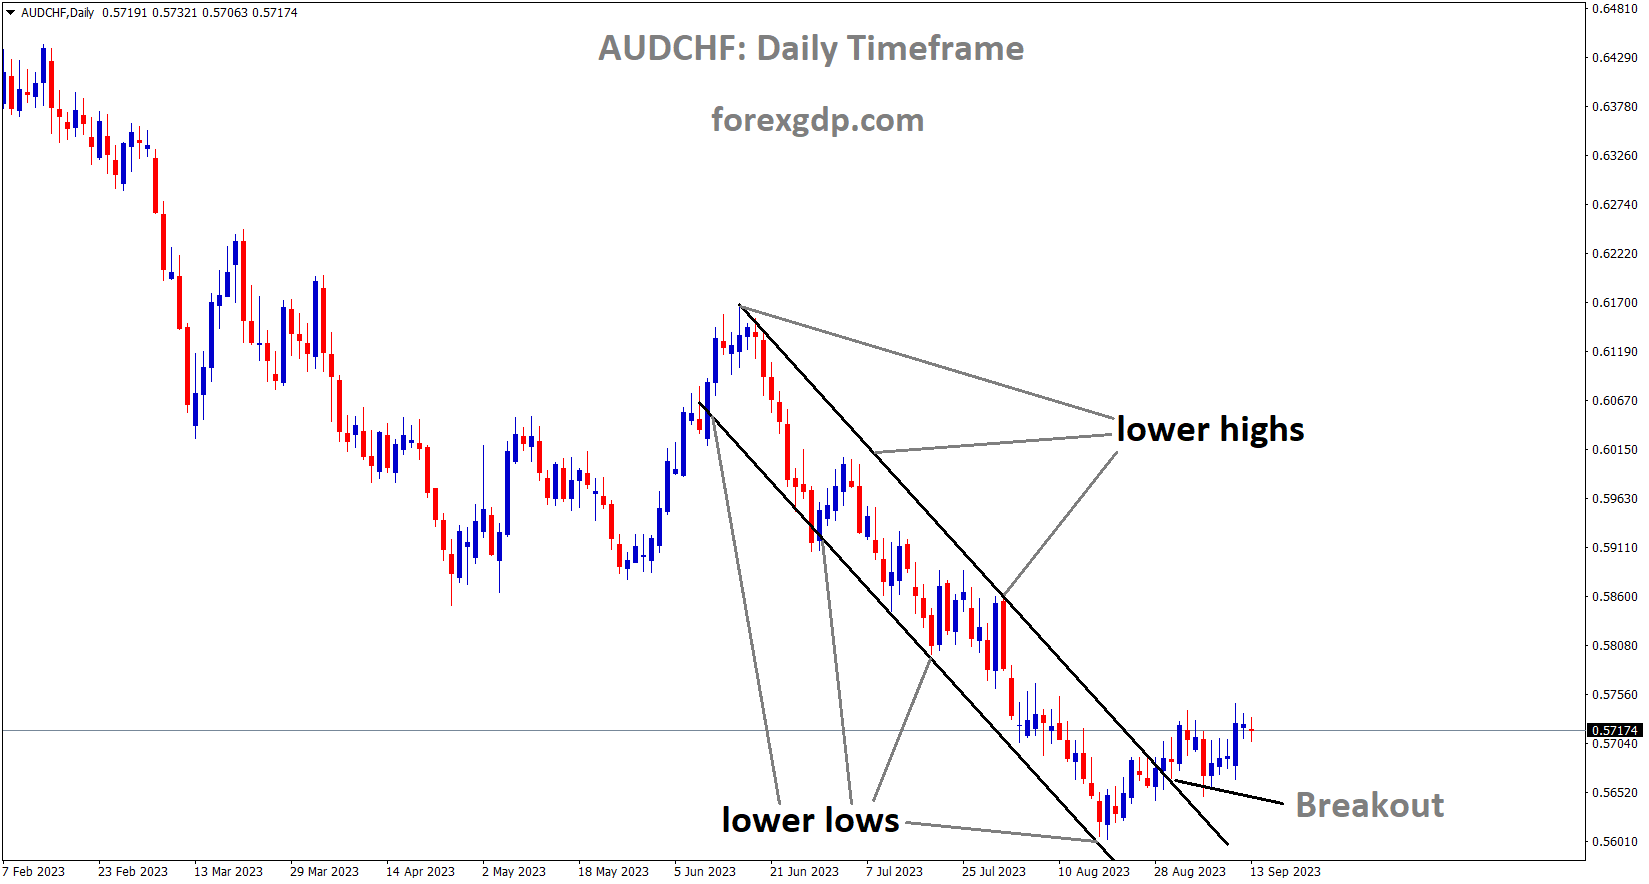 AUDCHF has broken Descending channel in upside